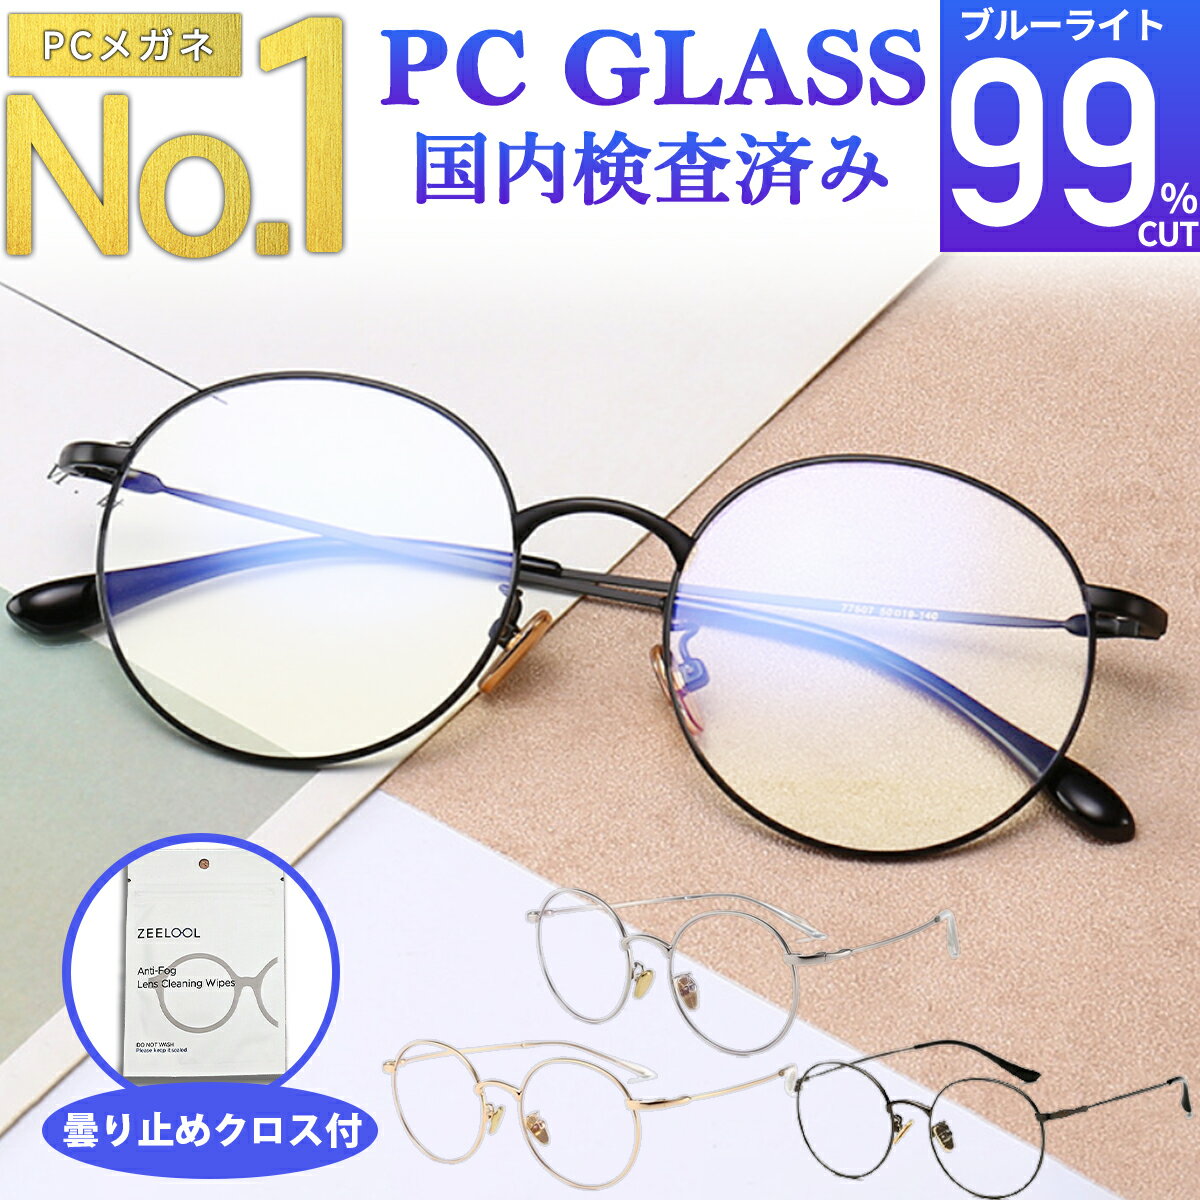 ブルーライトカットメガネ PCメガネ 99.9% UV420 紫外線カット パソコンメガネ PC眼鏡 JIS検査済 メンズ レディース おしゃれ 度なし uvカット 丸メガネ 伊達メガネ 伊達メガネ 軽量 ケース クロス付